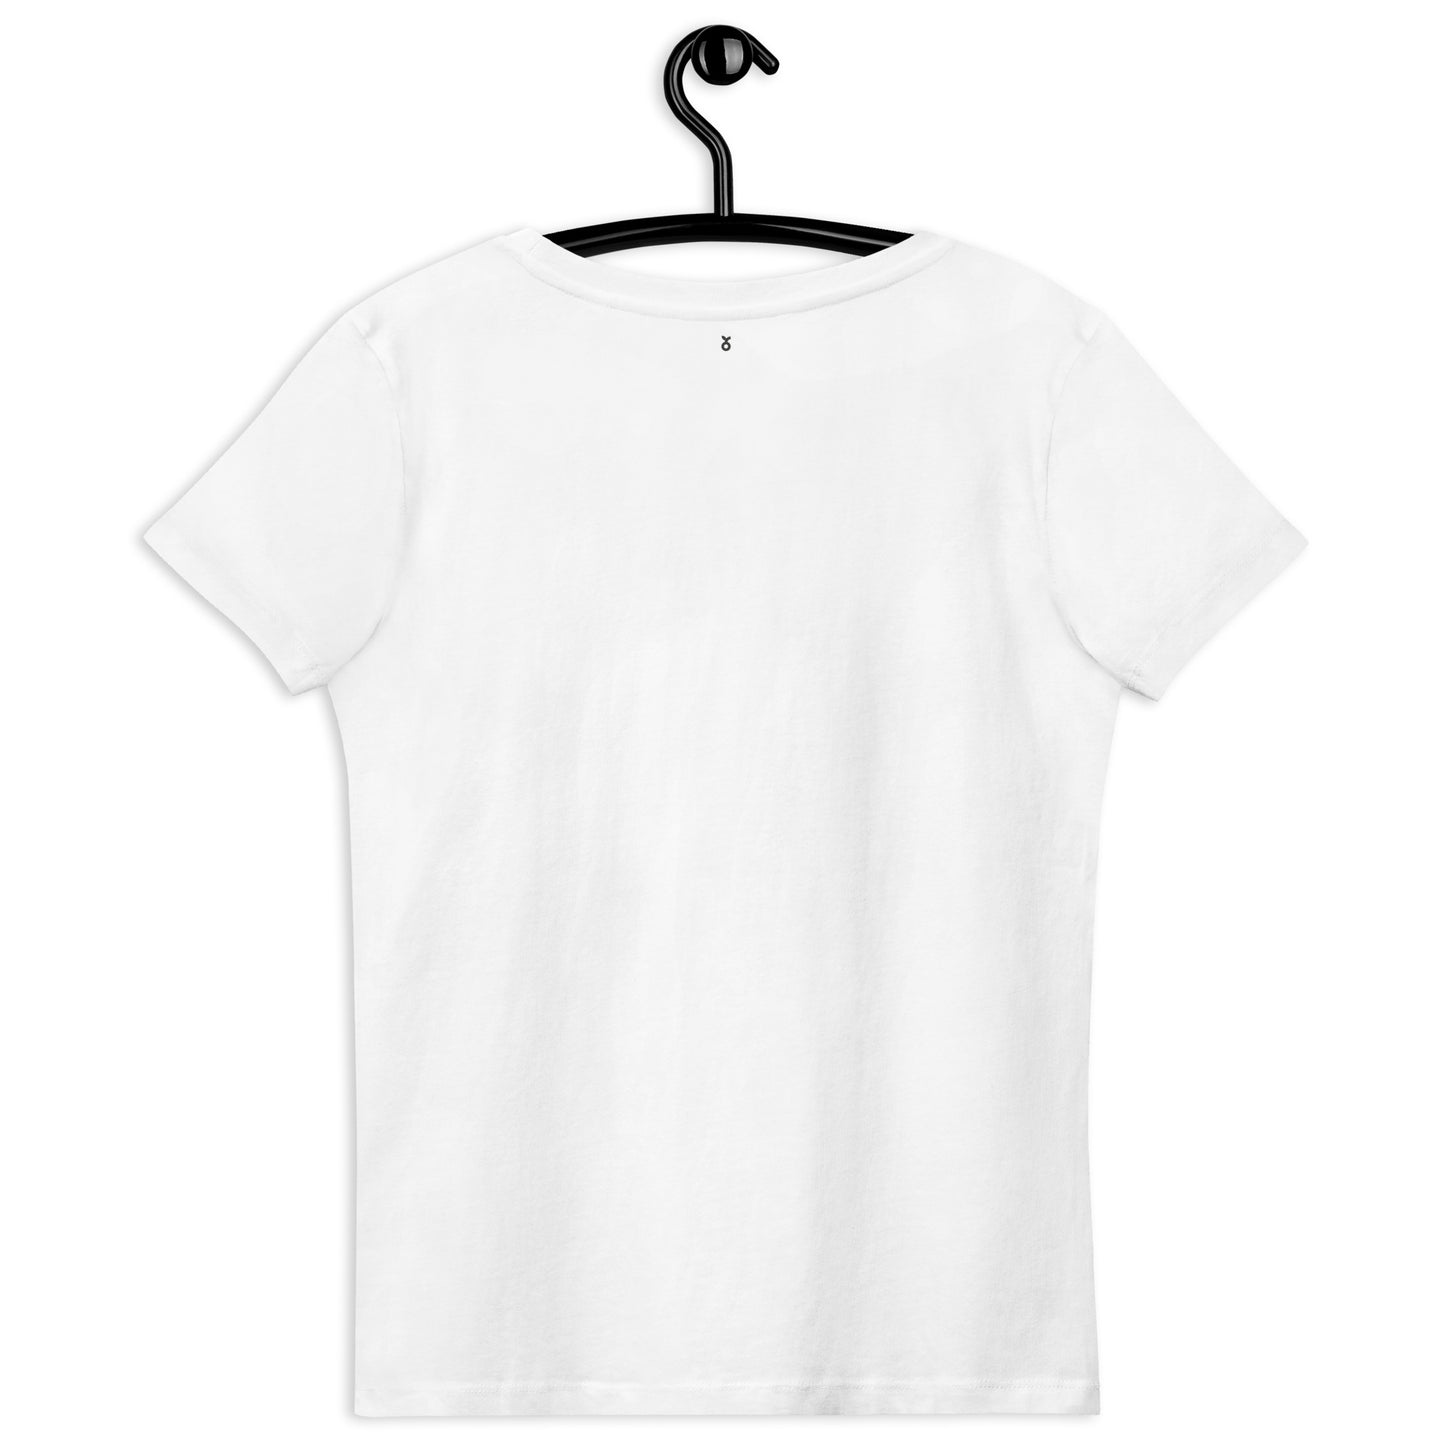 Geborduurd lente vogels Bauhaus stijl wit T-shirt van biologisch katoen - Dames wit